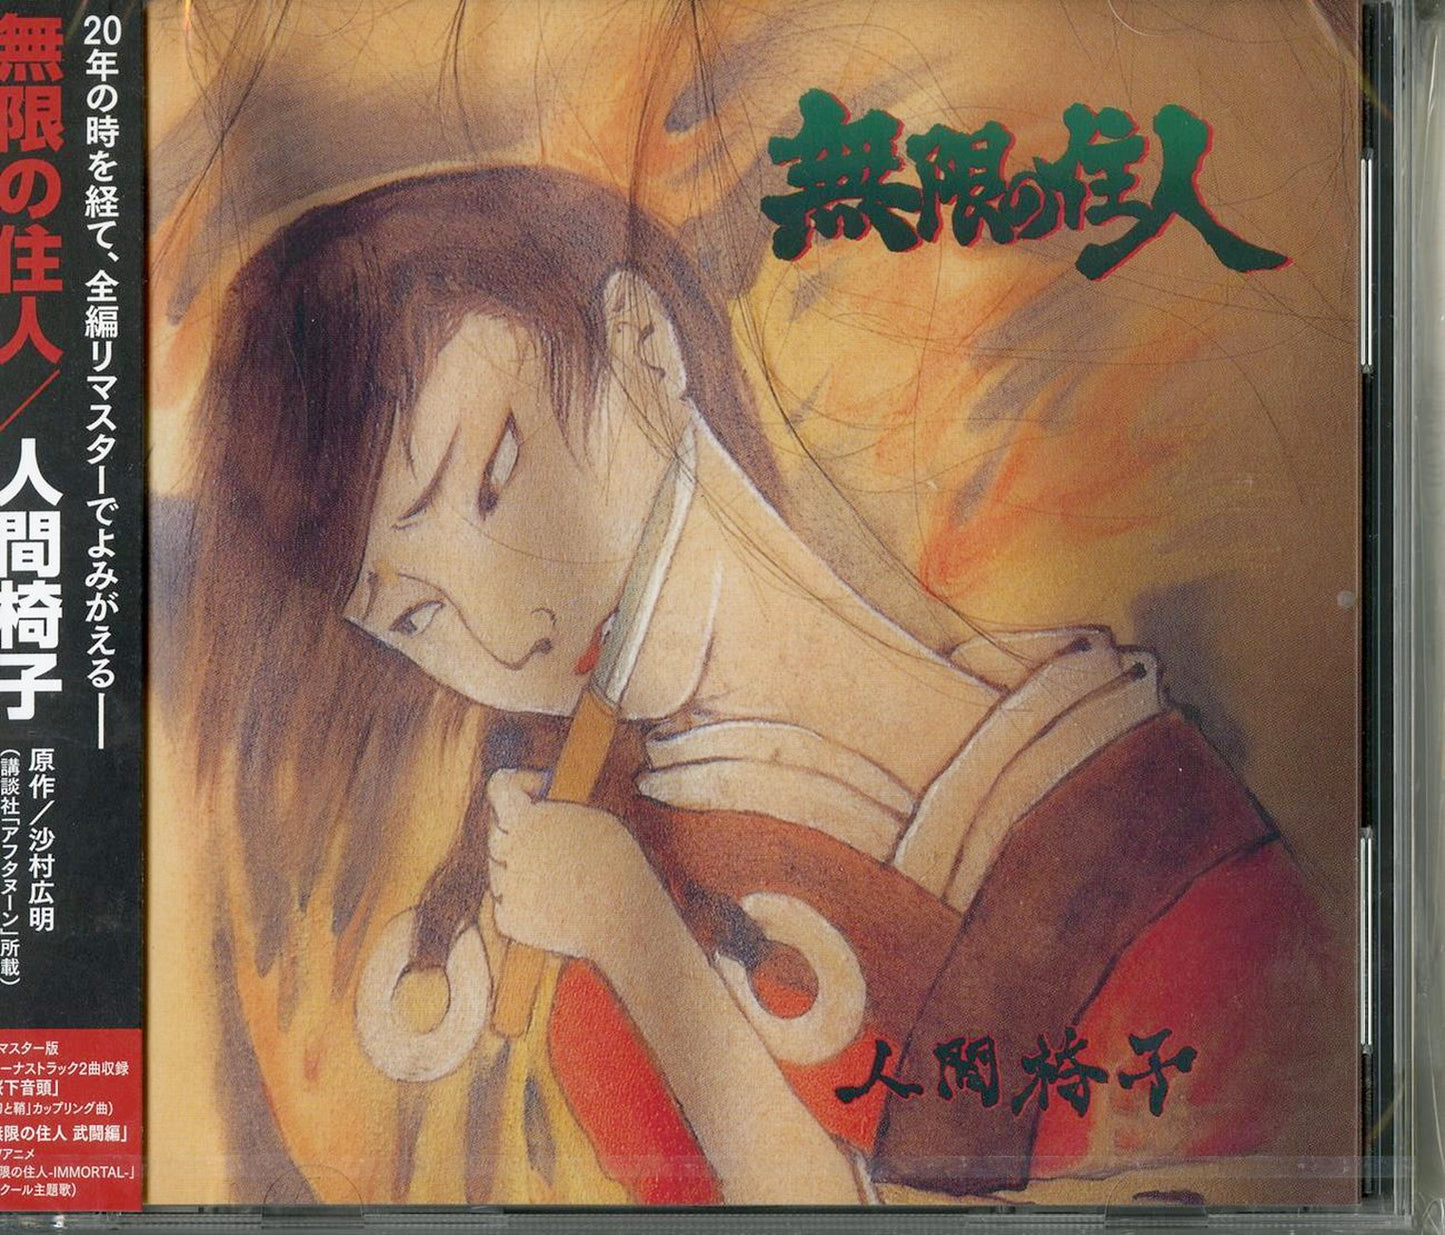 Ningen Isu - Mugen No Juunin - Japan CD